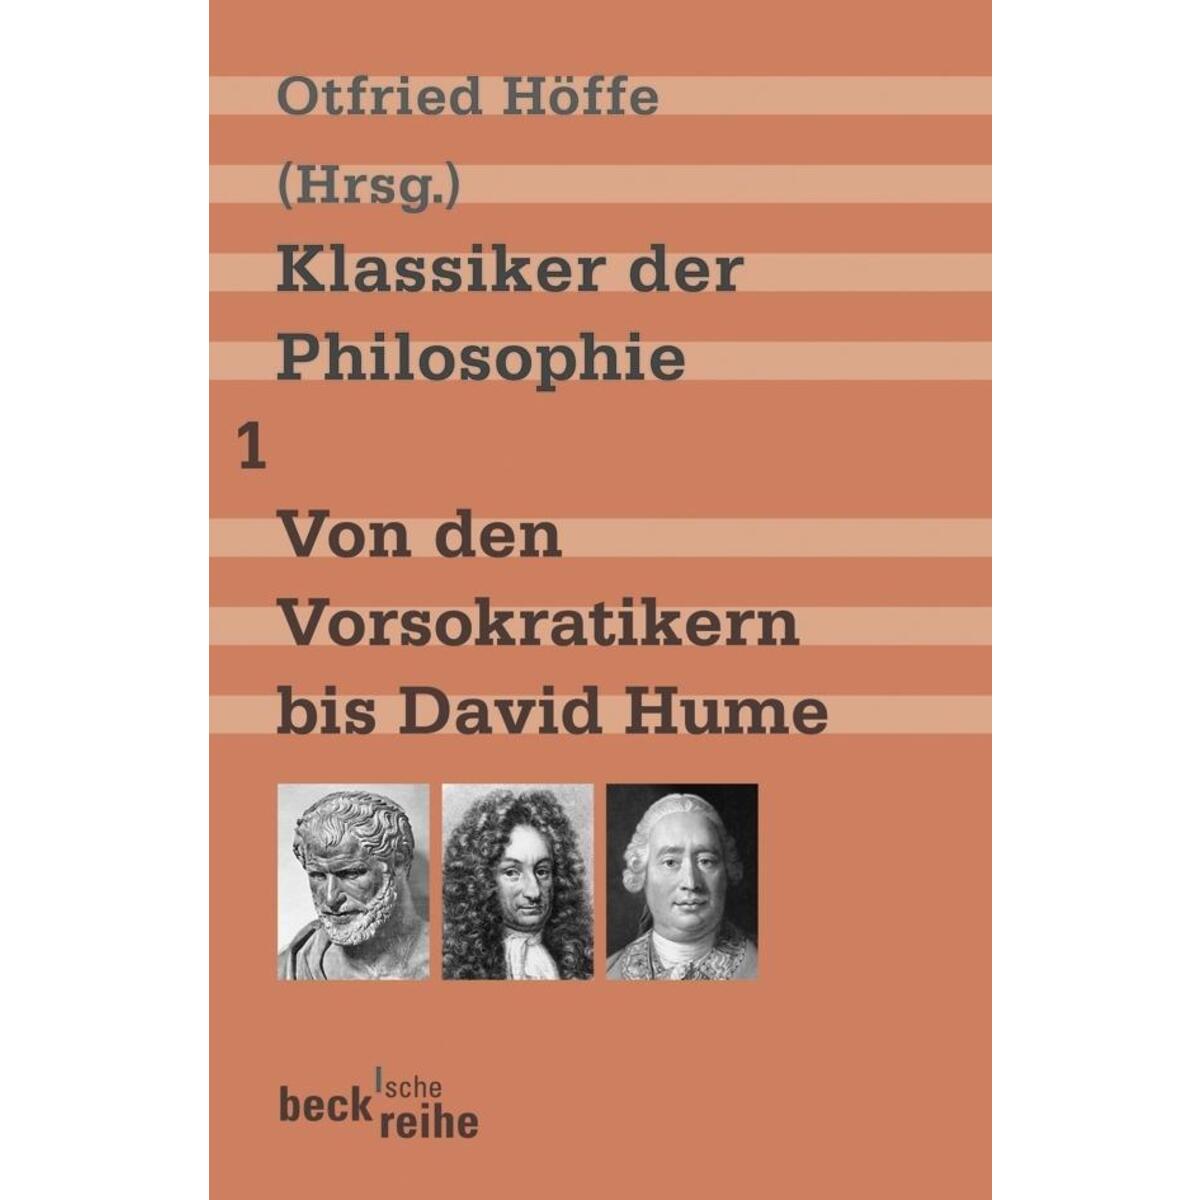 Klassiker der Philosophie 1: Von den Vorsokratikern bis David Hume von C.H. Beck